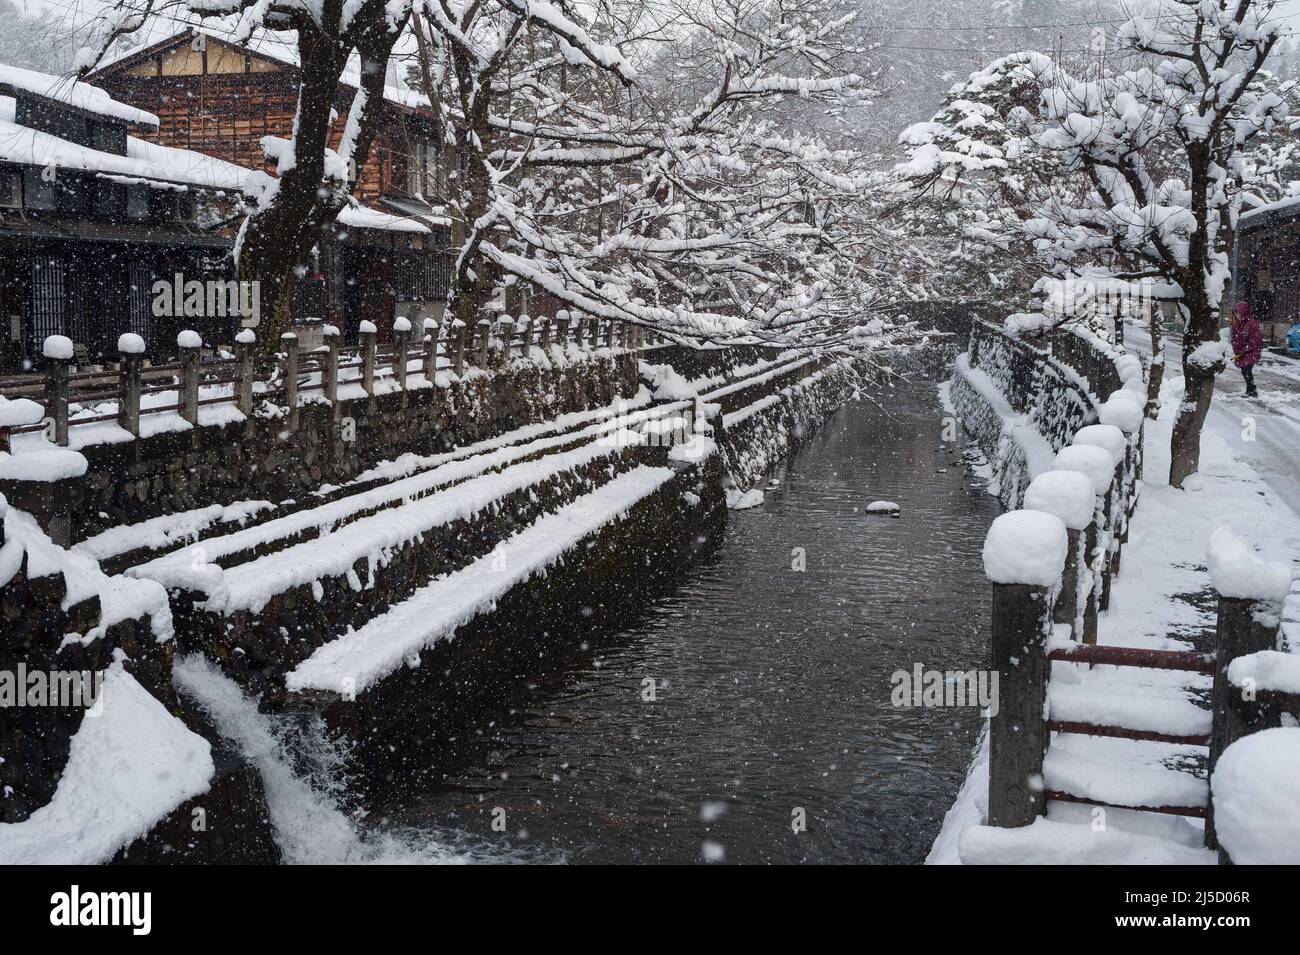 27.12.2017, Takayama, Gifu, Giappone, Asia - un paesaggio invernale innevato con case residenziali sulla riva del fiume Enako vicino alla città vecchia. [traduzione automatizzata] Foto Stock